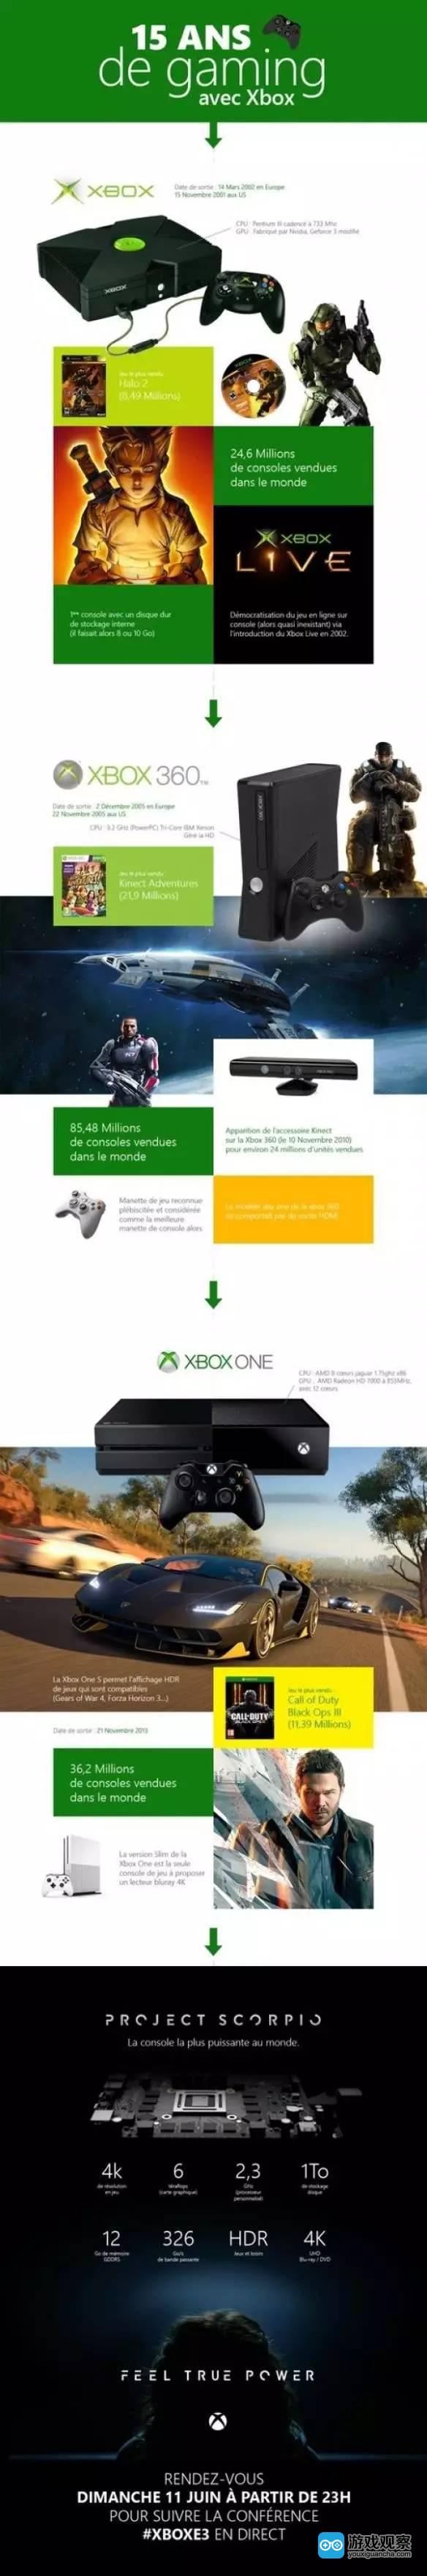 微软法国透露XboxOne累计销量仅3620万 不及Xbox360一半